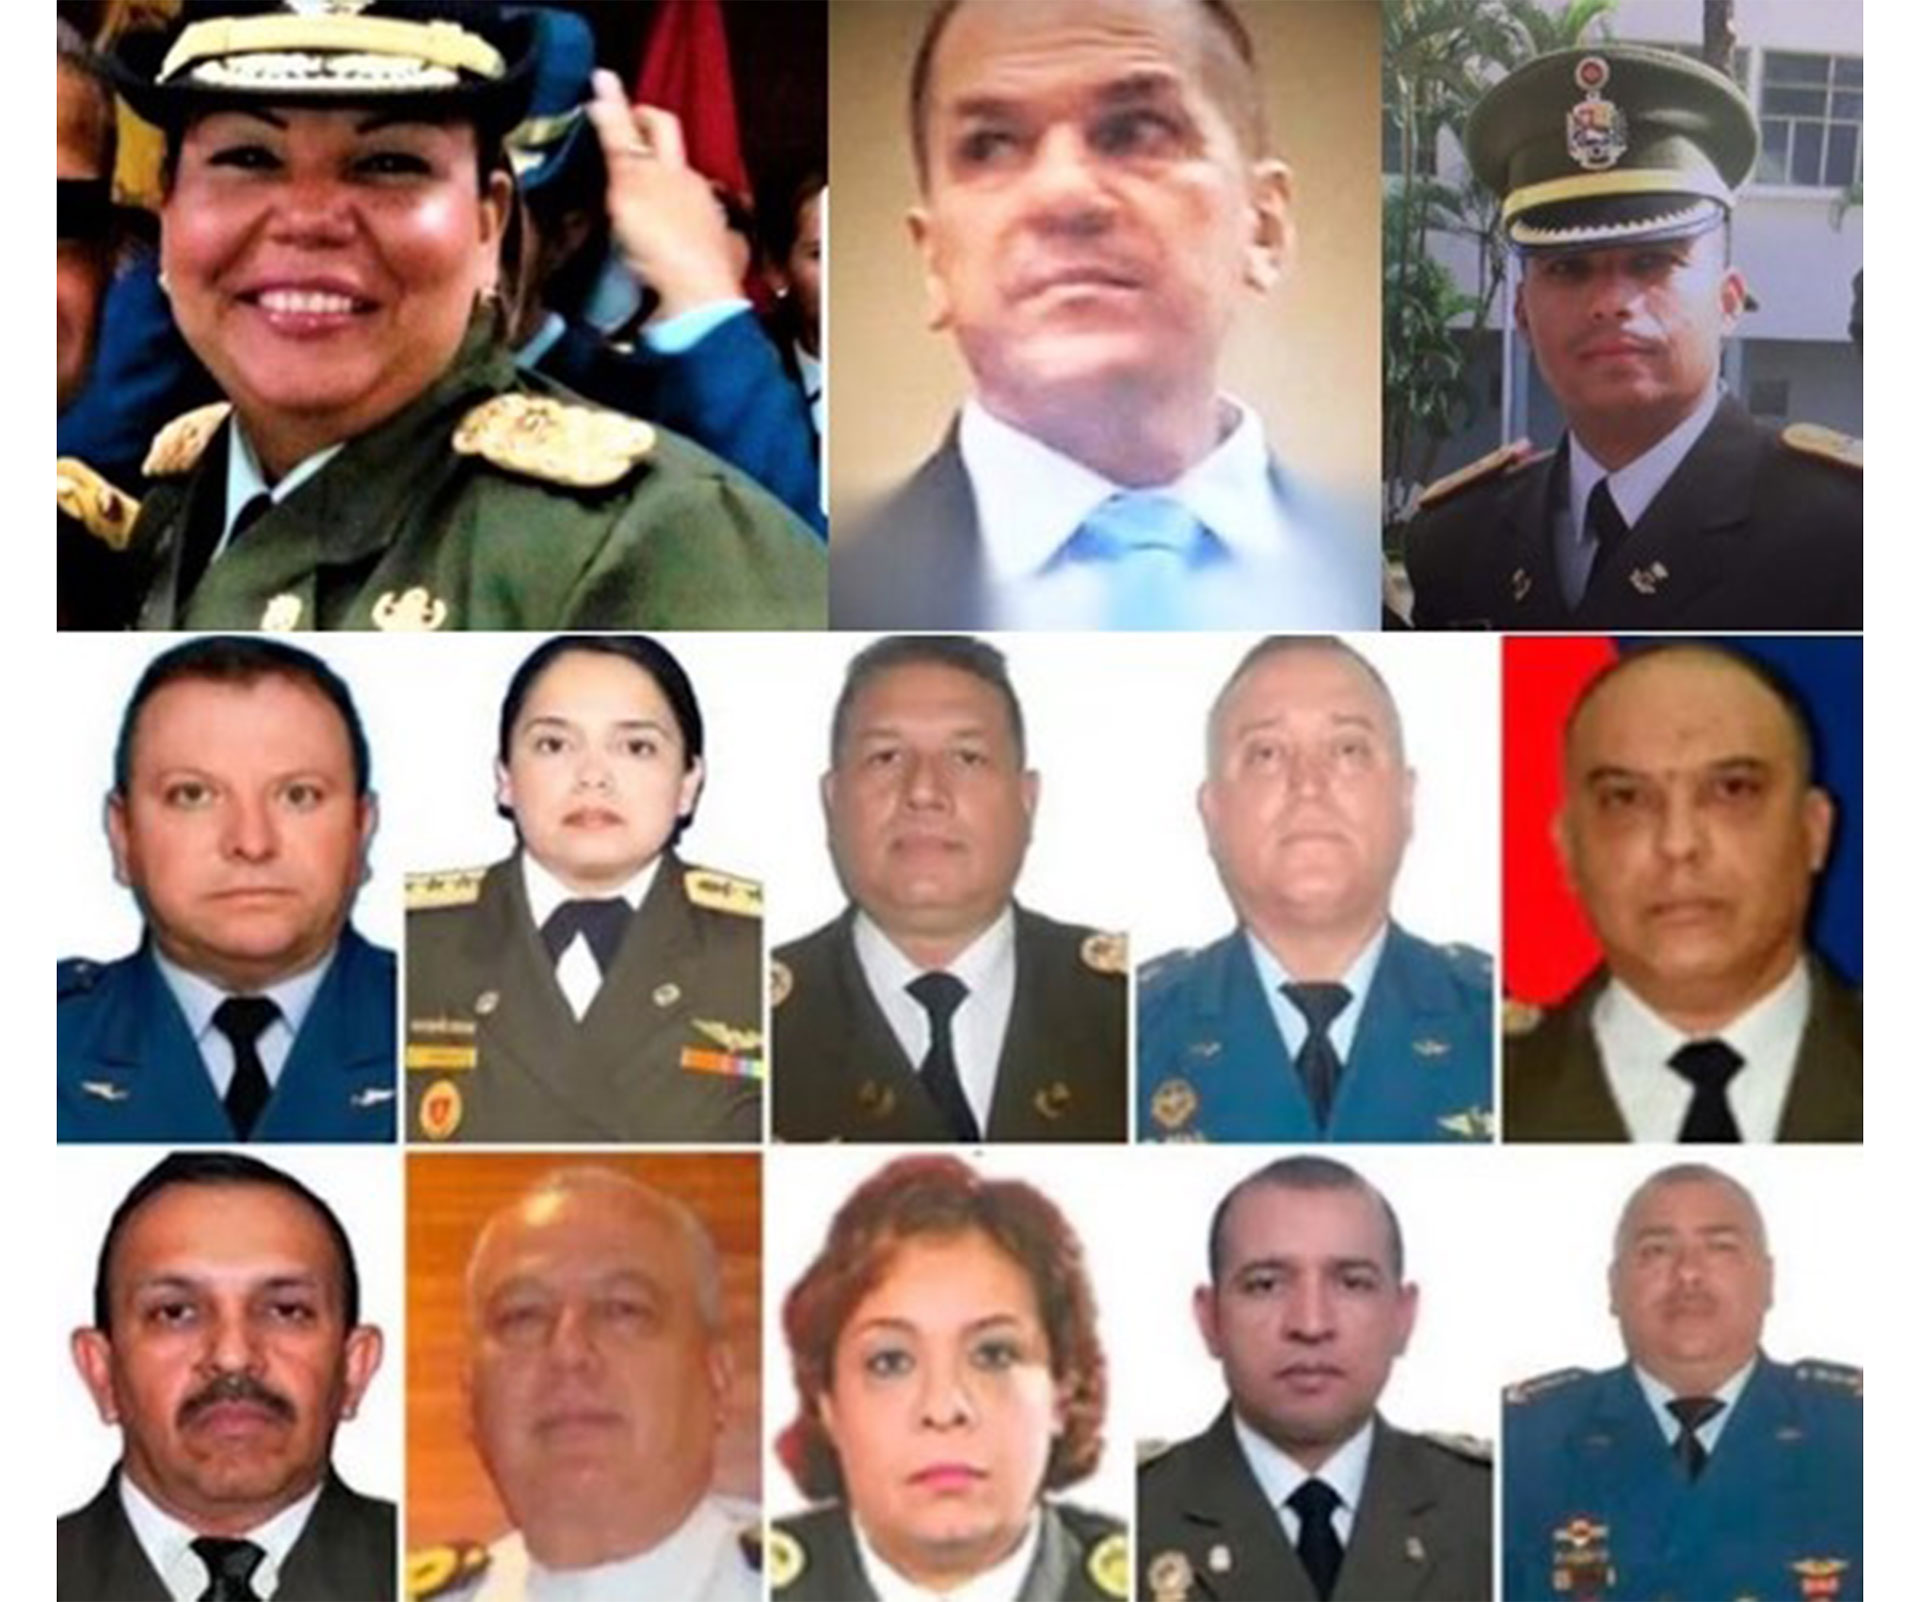 La oposición venezolana agrupada en la Plataforma Unitaria pidió este miércoles al alto comisionado de la ONU para los DDHH “verificar presencialmente” las condiciones de reclusión y estado de salud de todos los presos políticos.